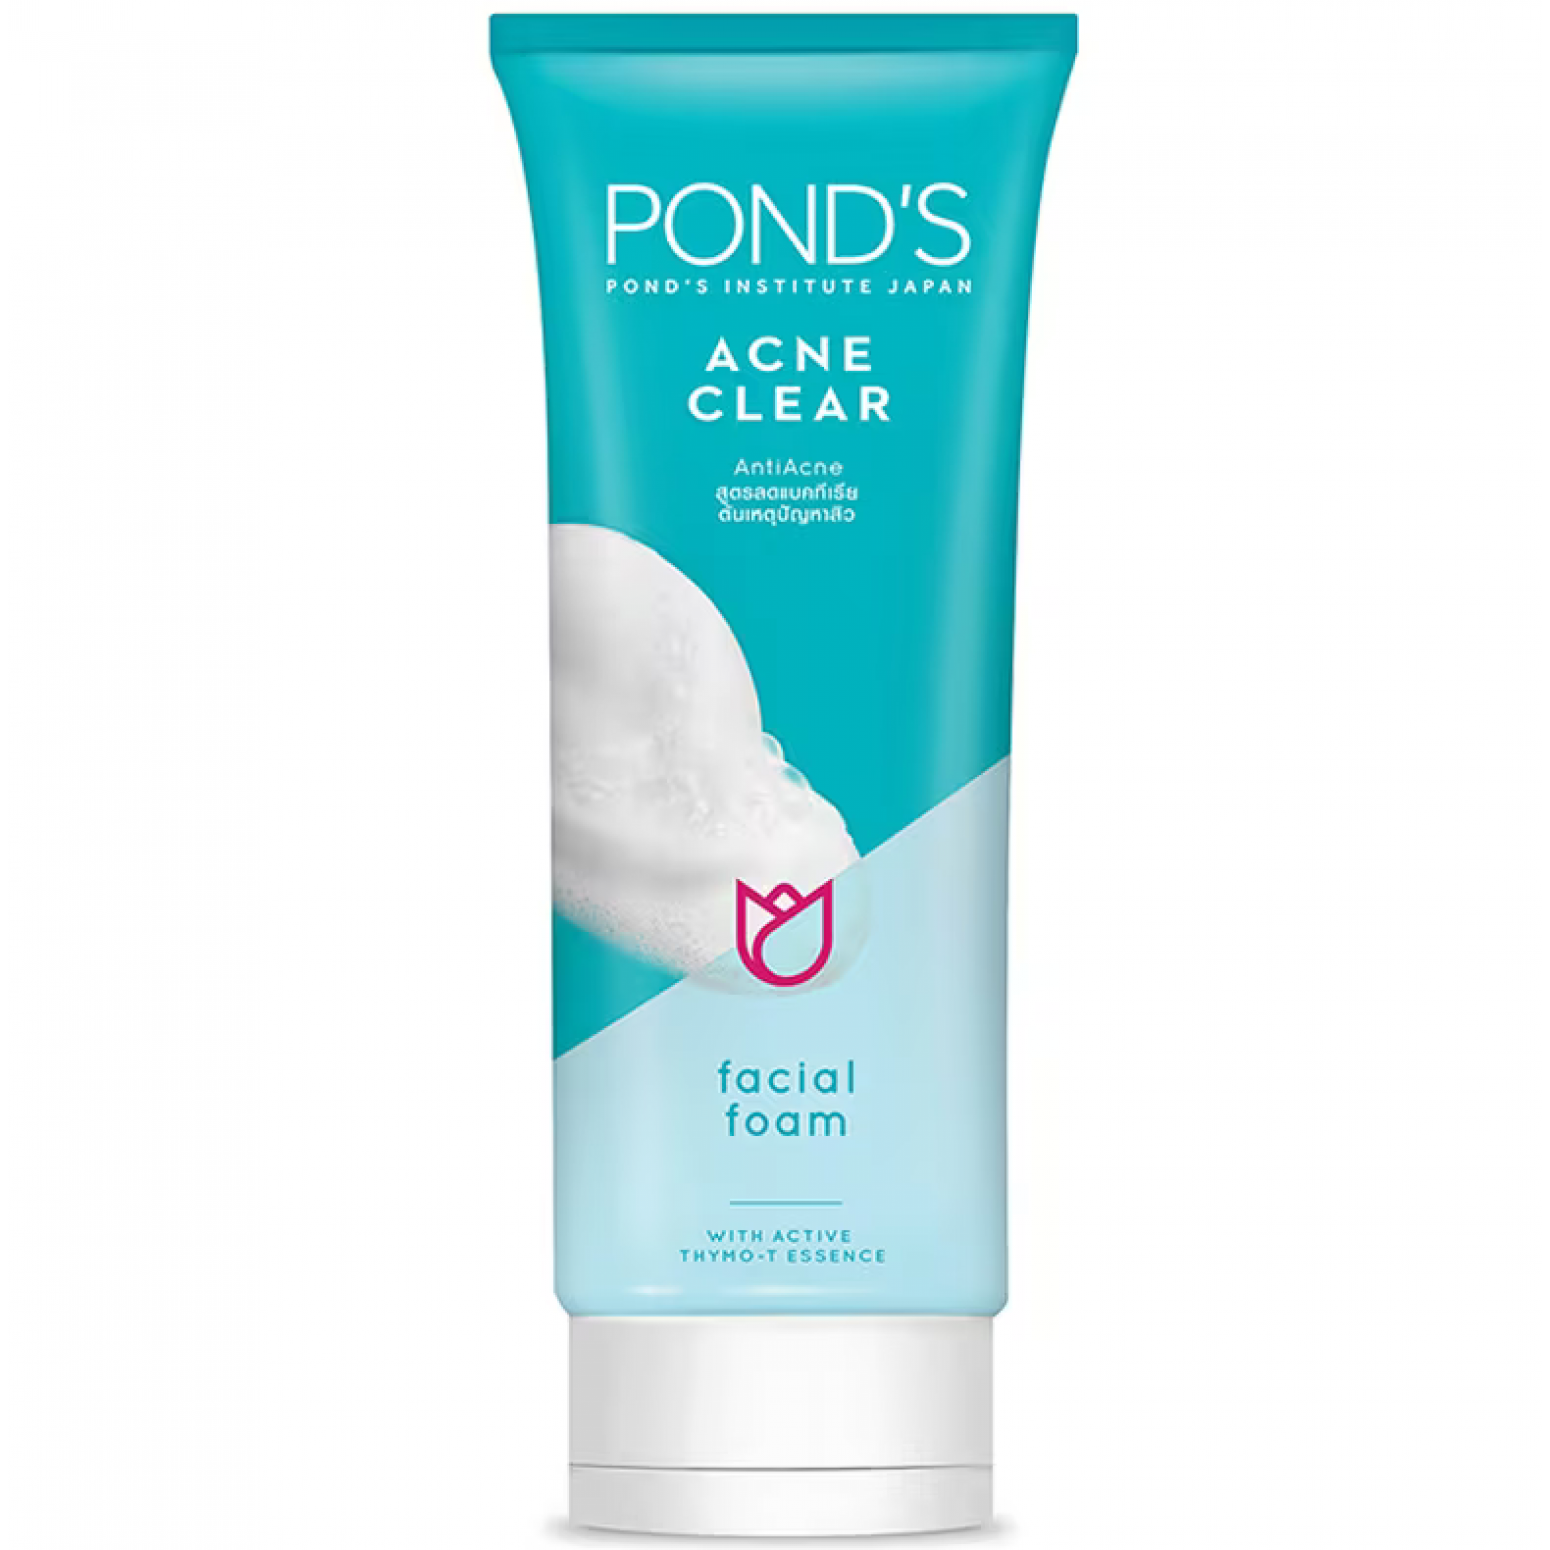 Ponds Acne Clear Anti Acne Facial Foam 100g.